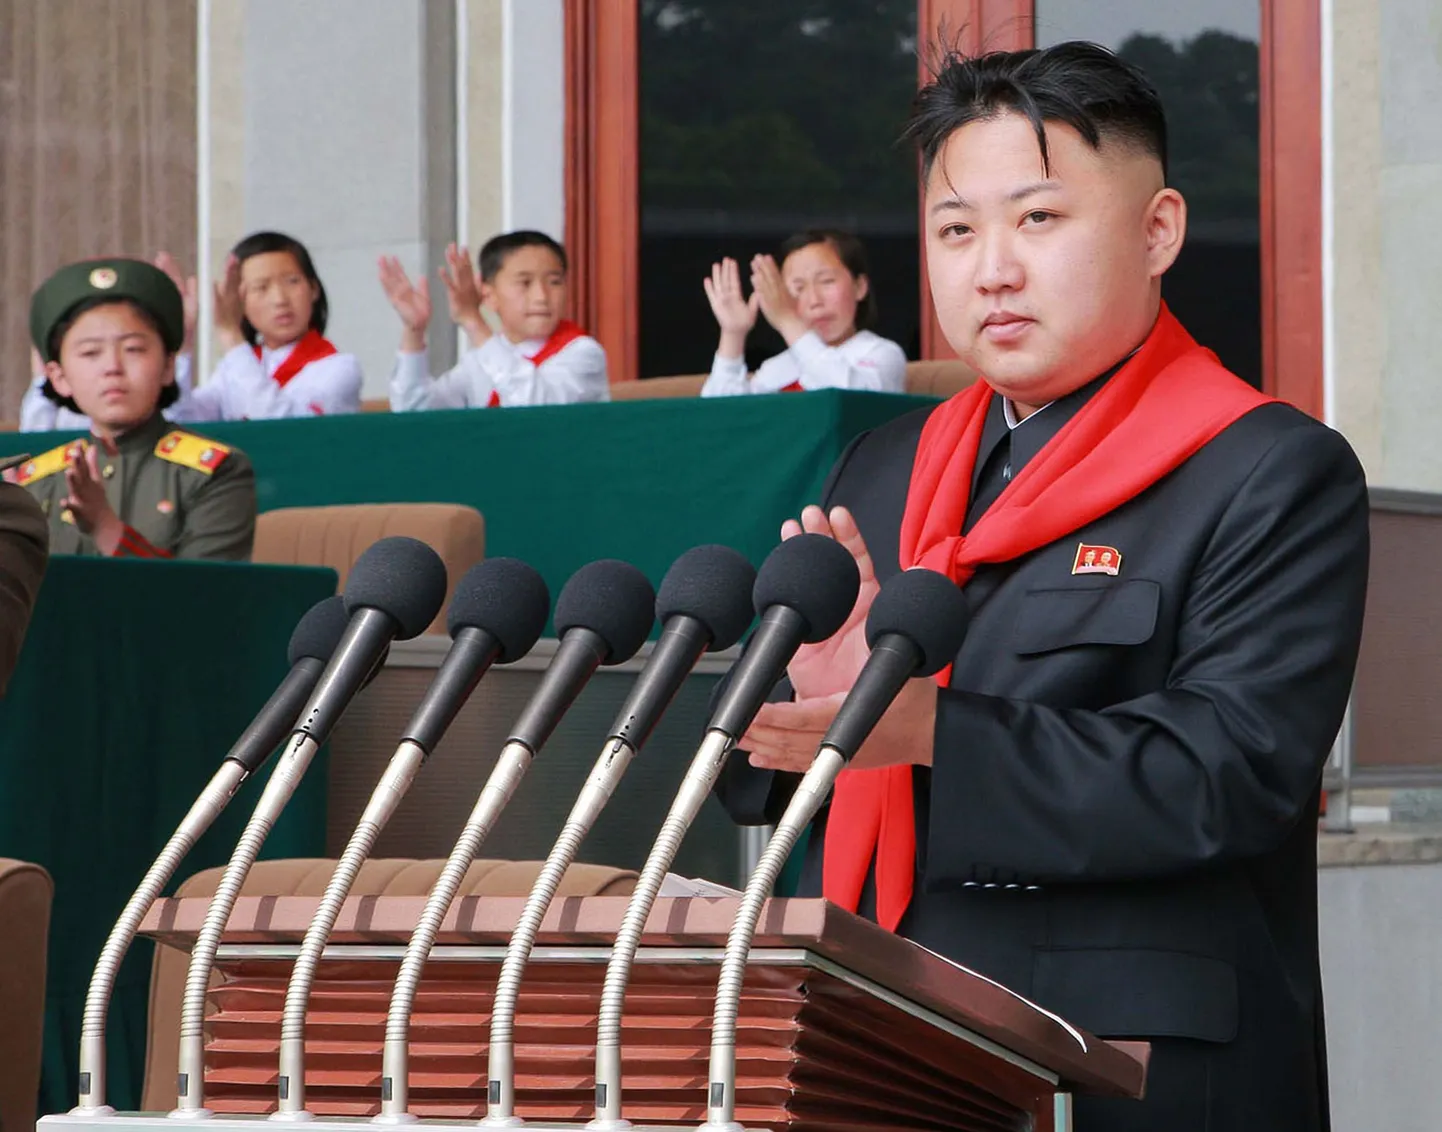 Põhja-Korea endine liider Kim Jong-il